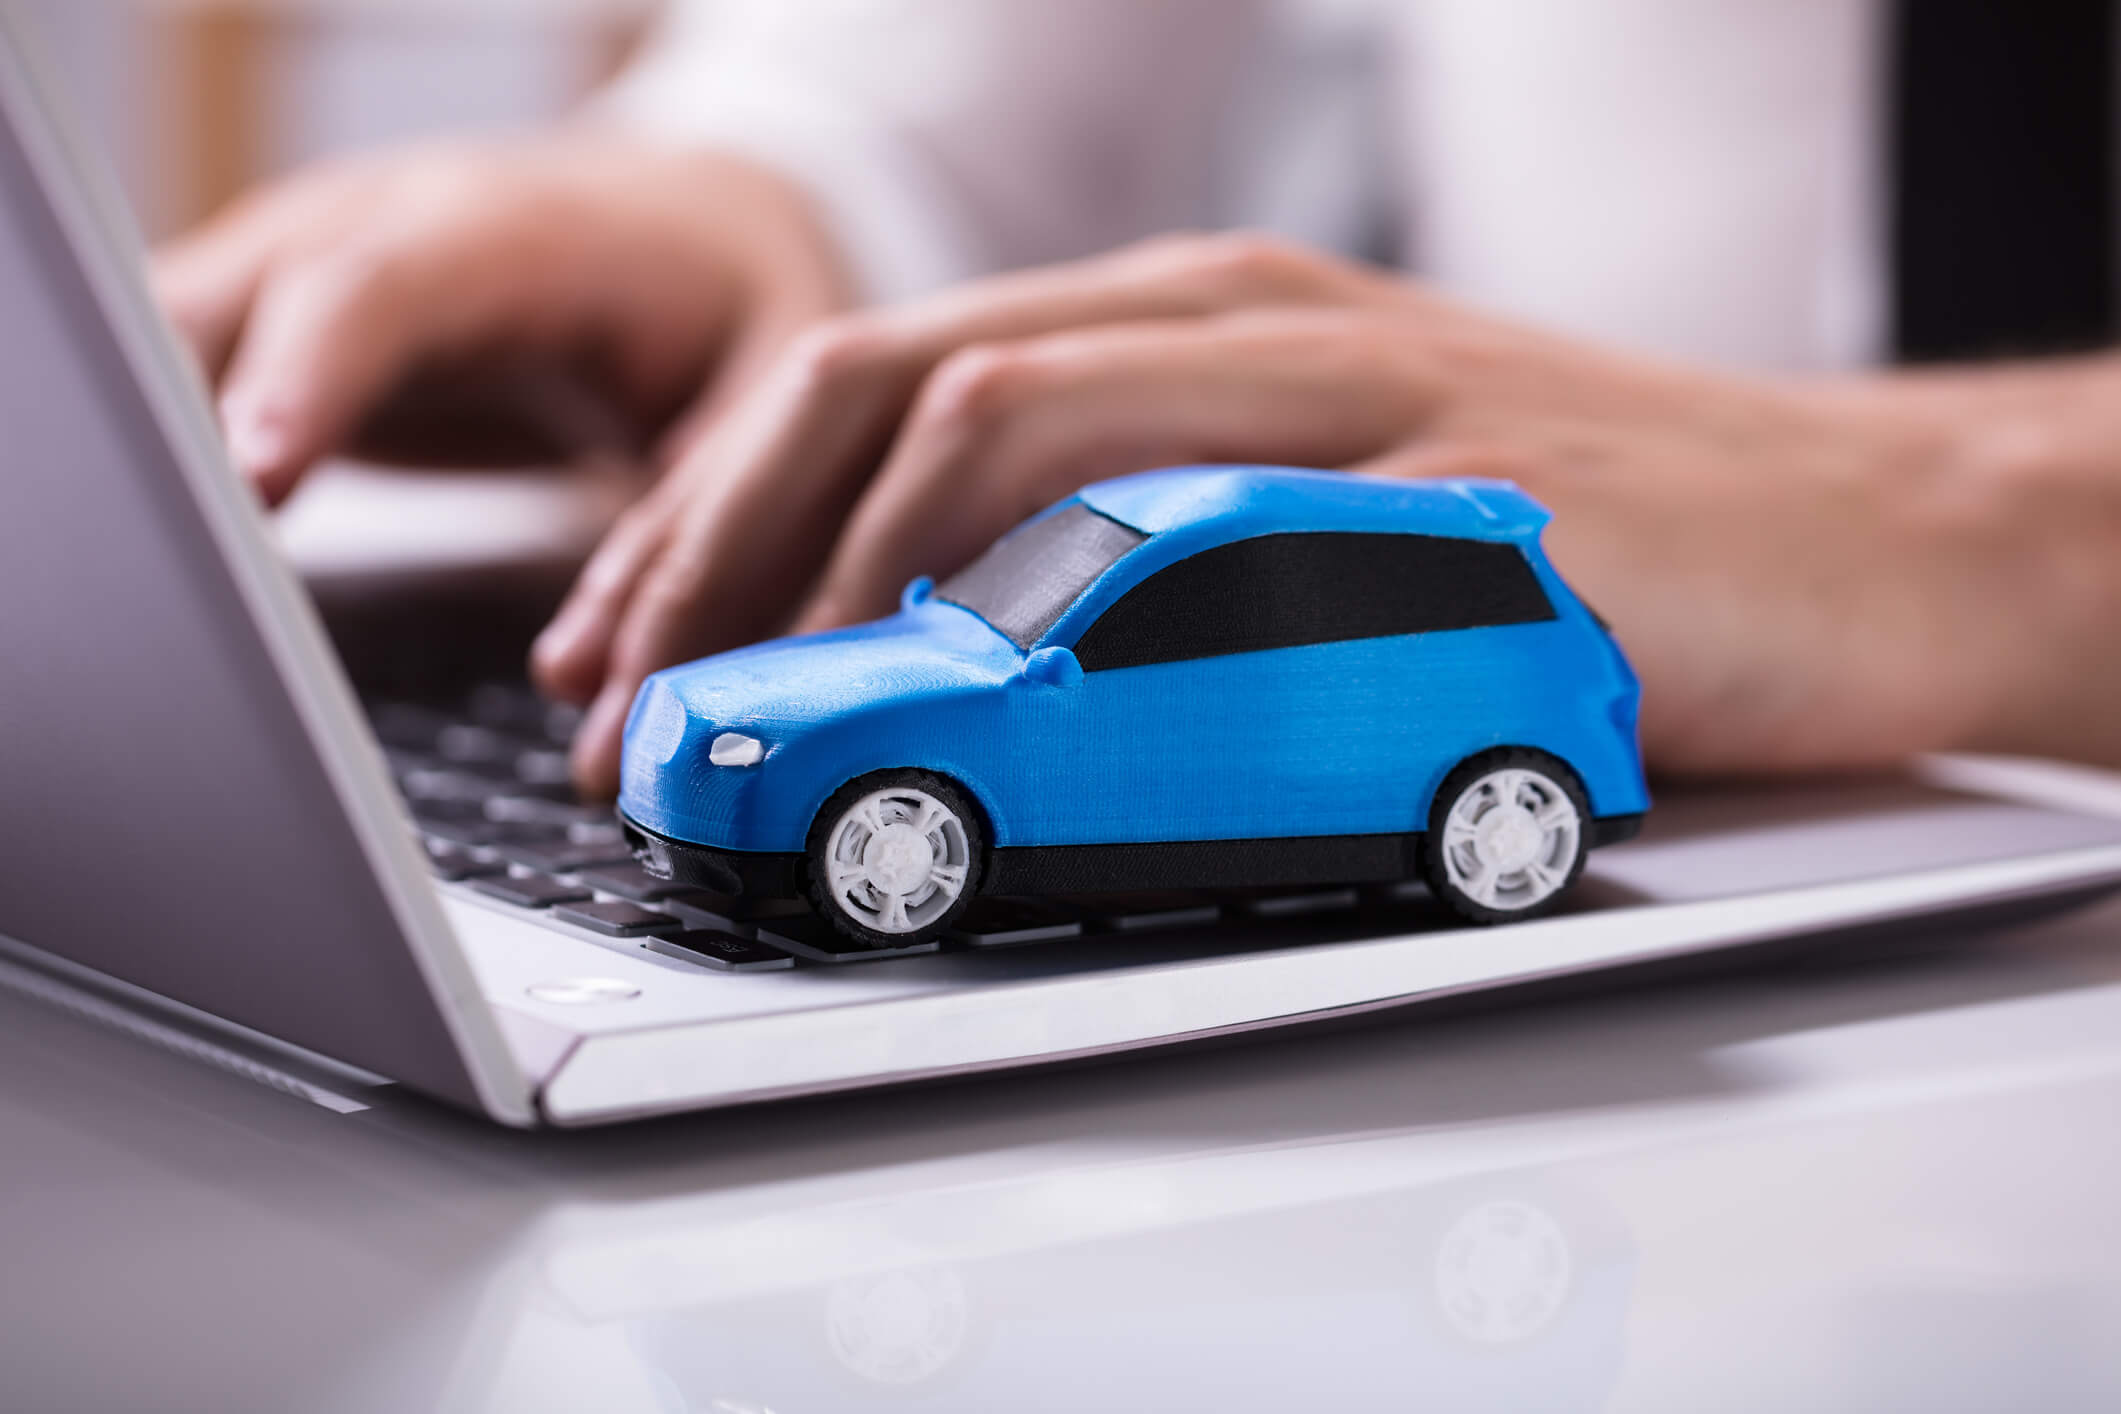 Vender carros na internet: por onde começar?